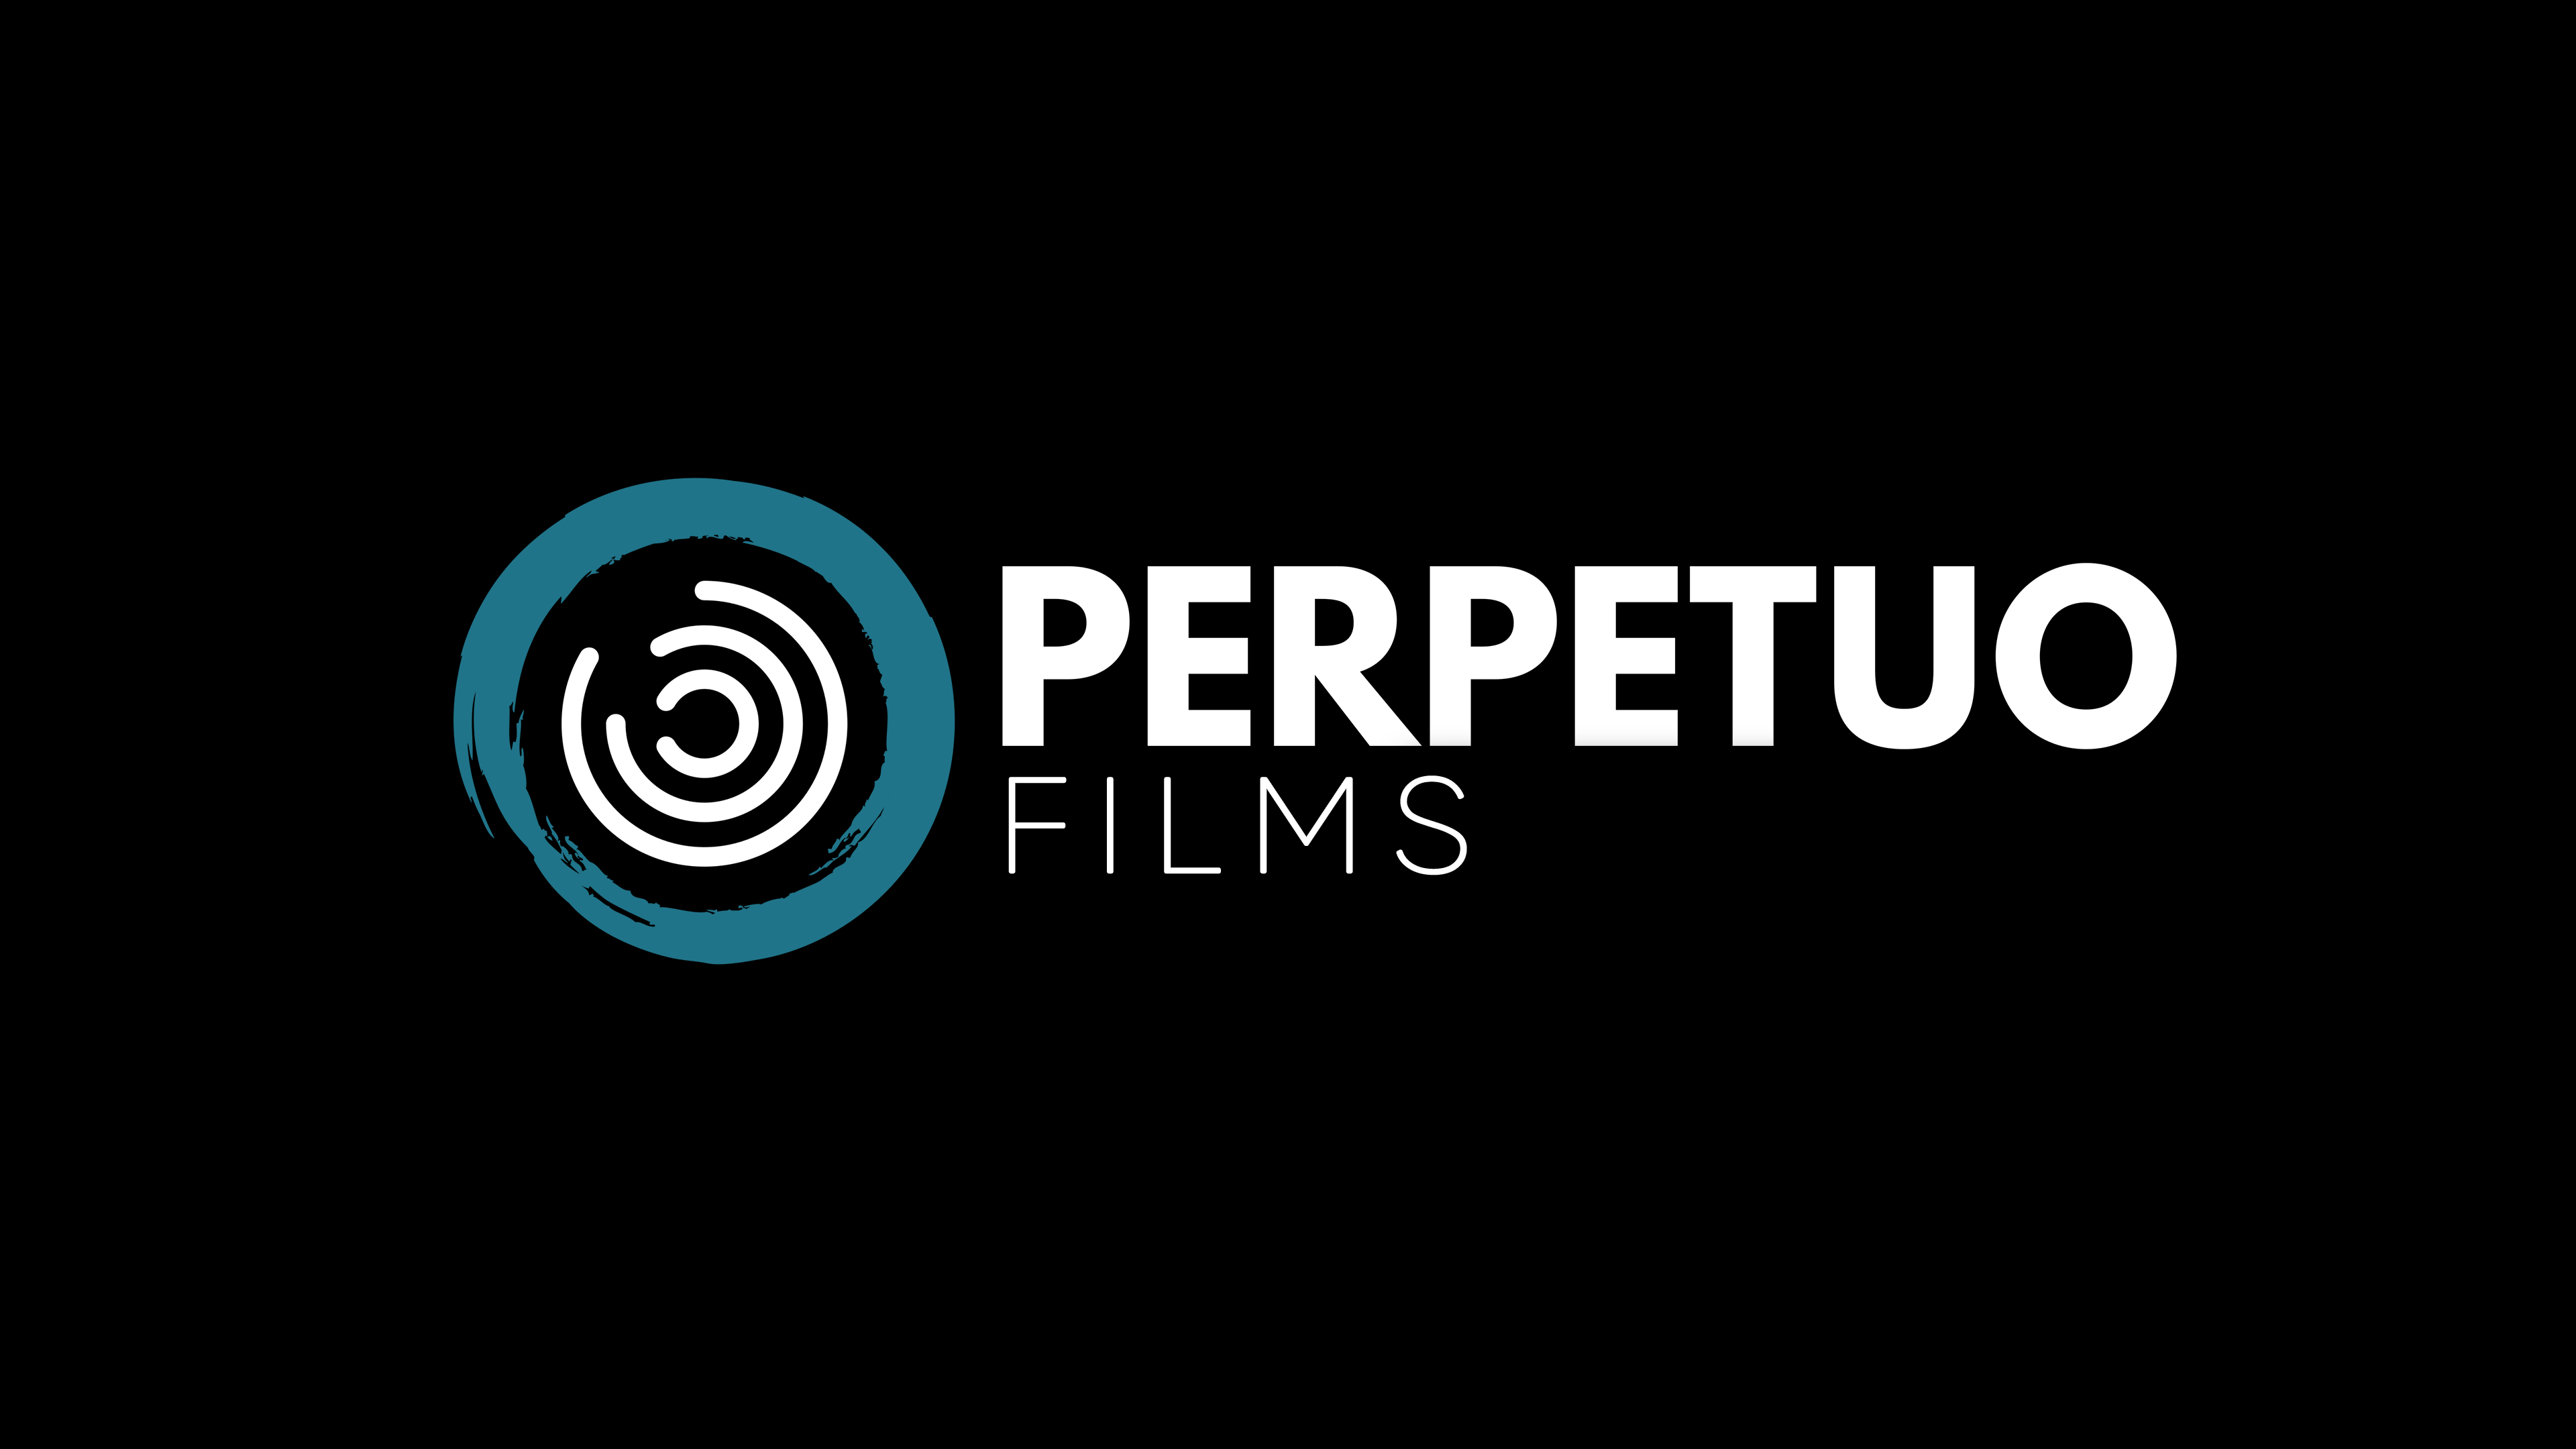 Perpetuo Films